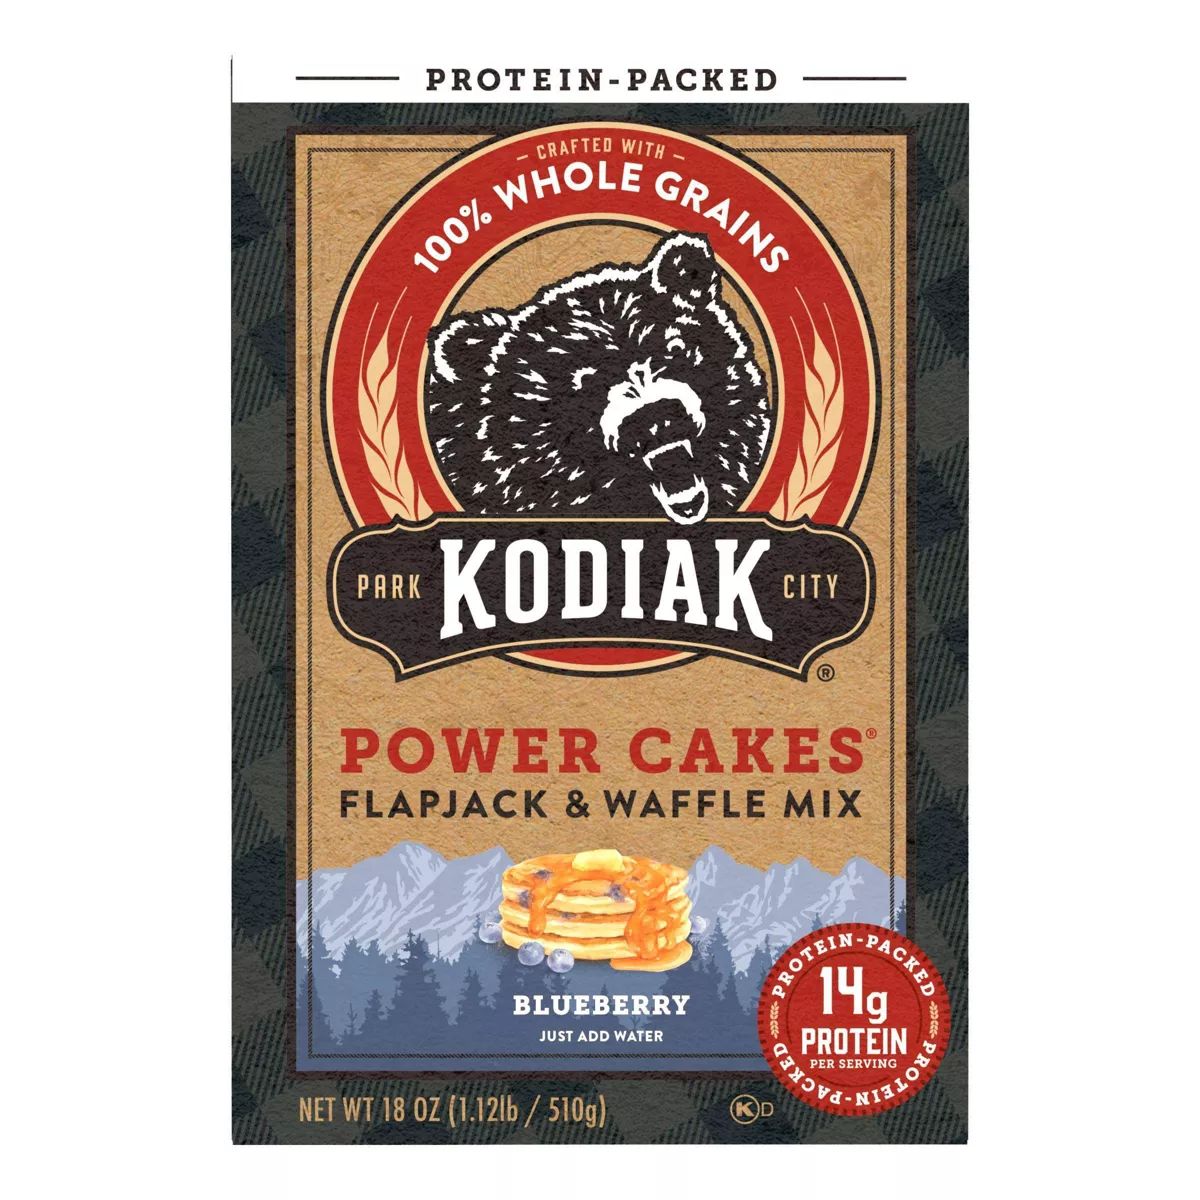 Kodiak Power Cakes Blueberry Flapjack and Waffle Mix - 18oz | Target